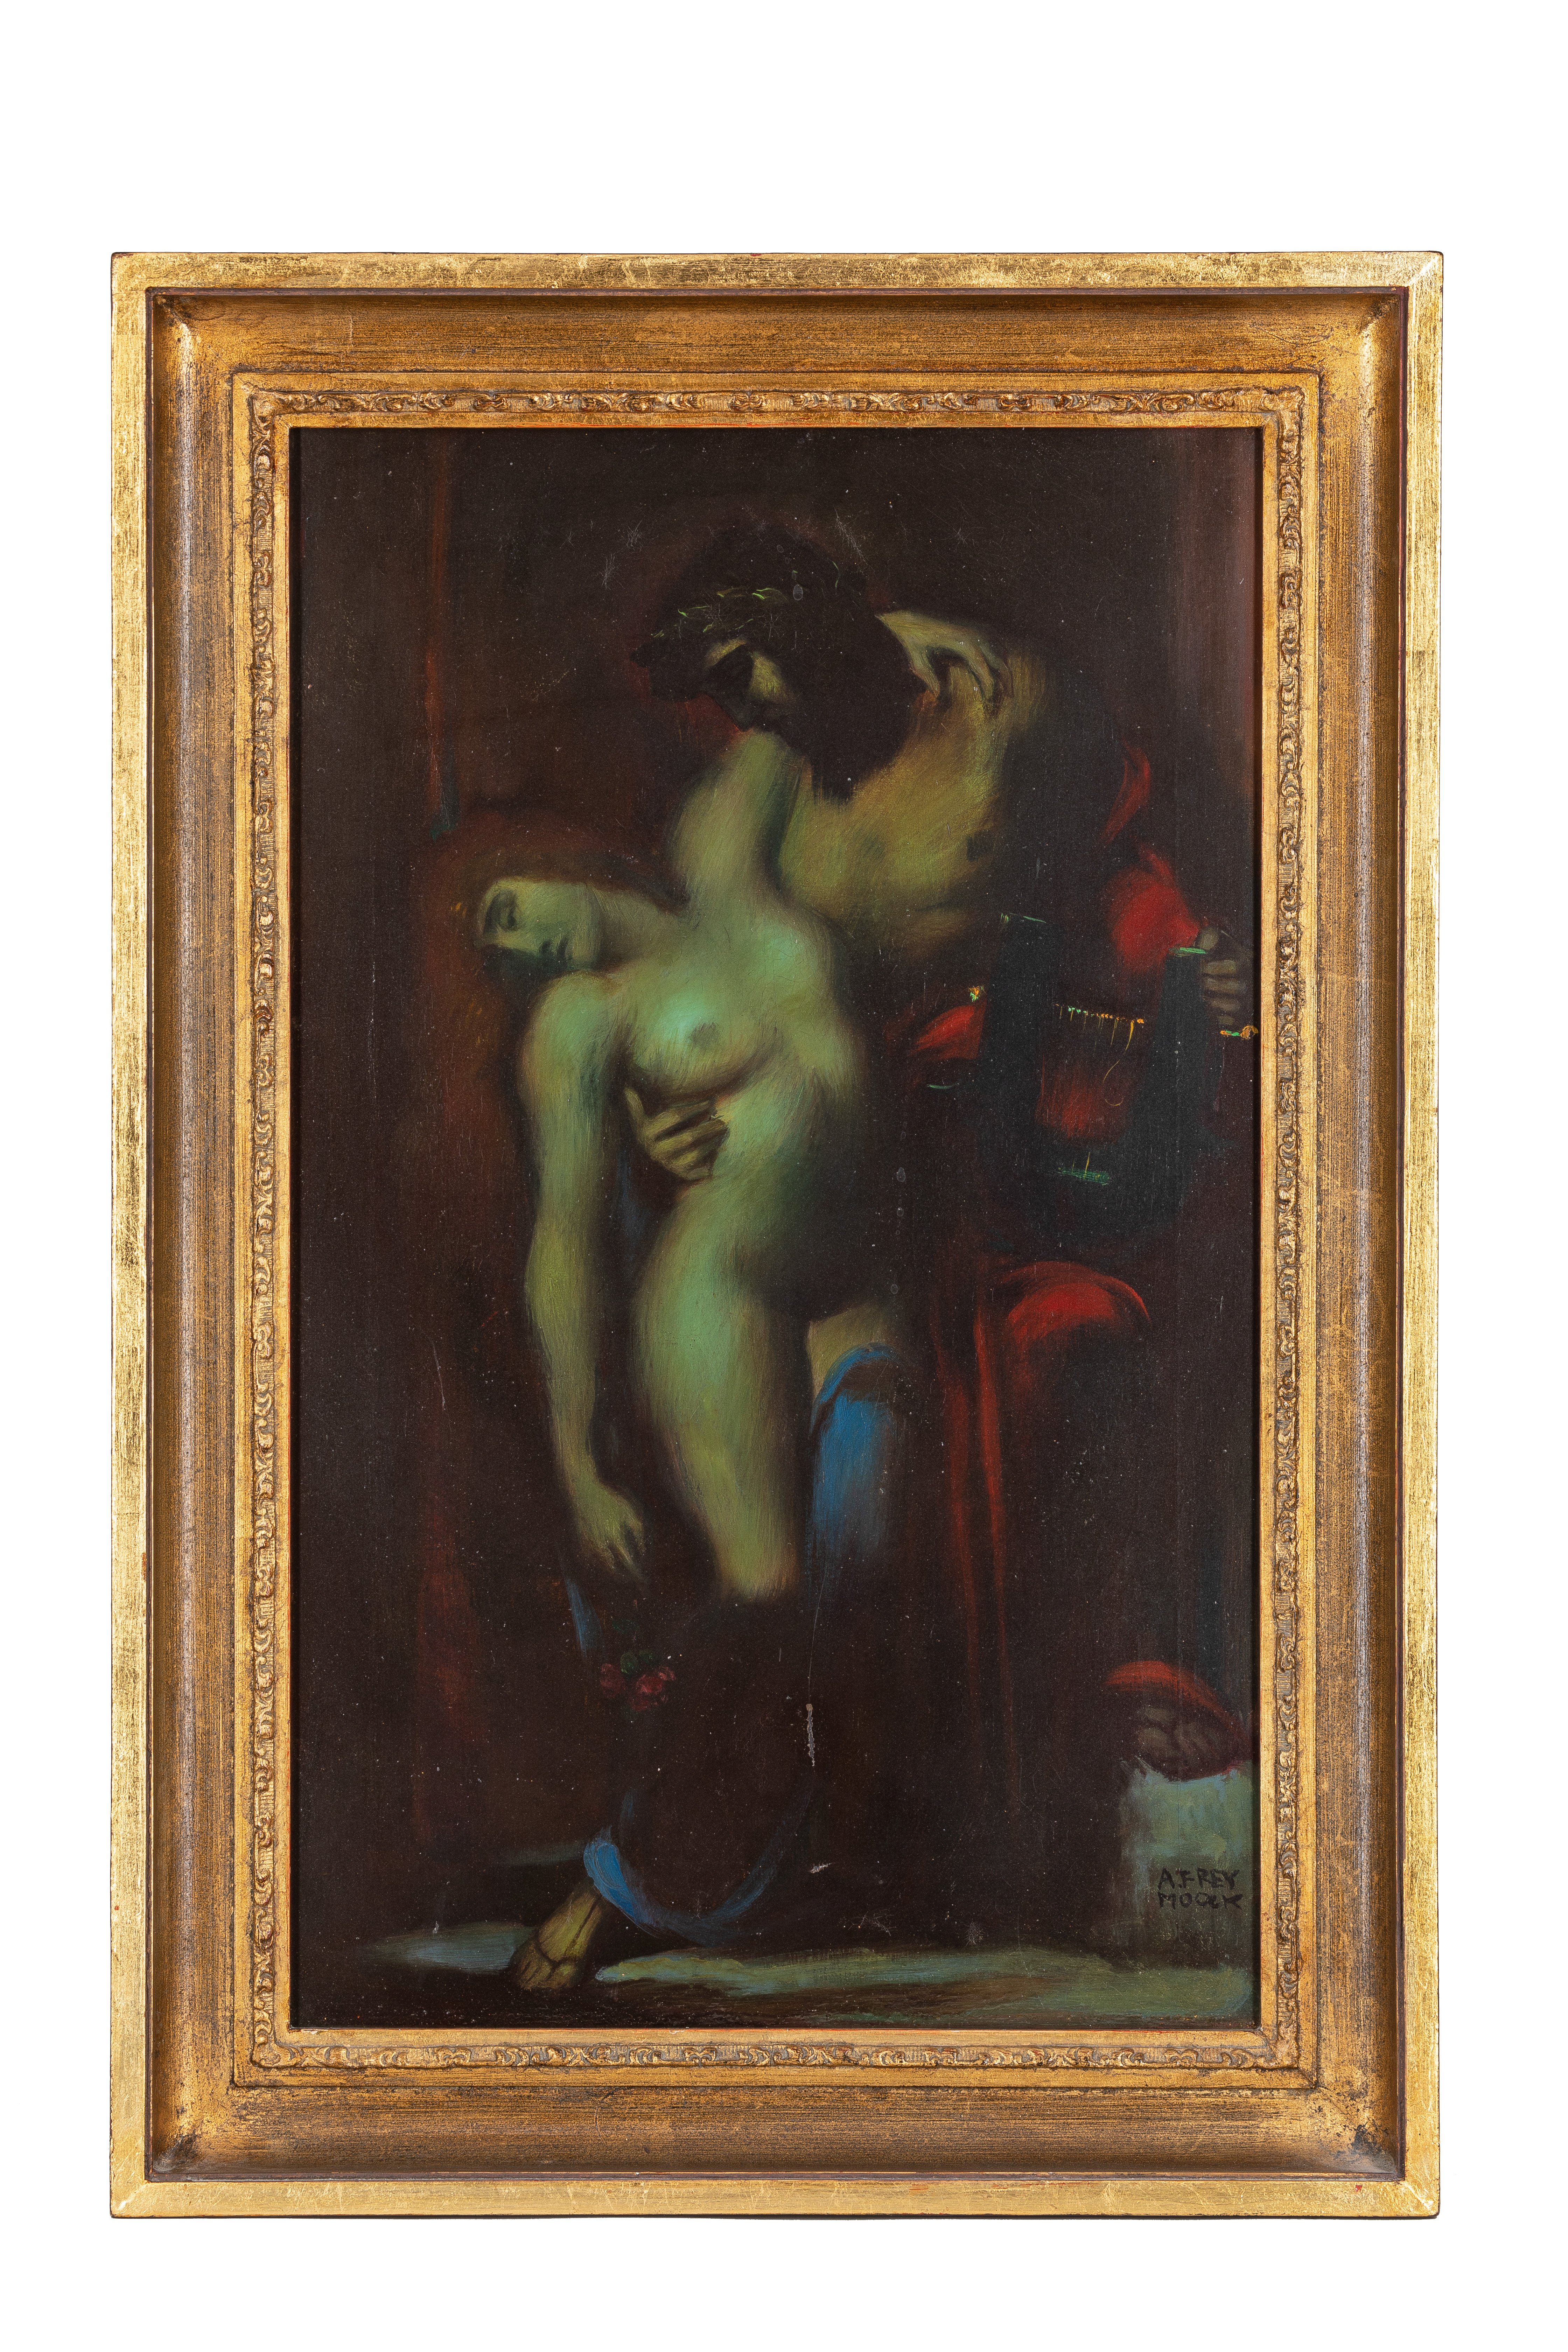 Gemälde "Jesus Christus mit unbekleideter Frau" (Sammlung Wulff Stiftung CC BY-NC-SA)